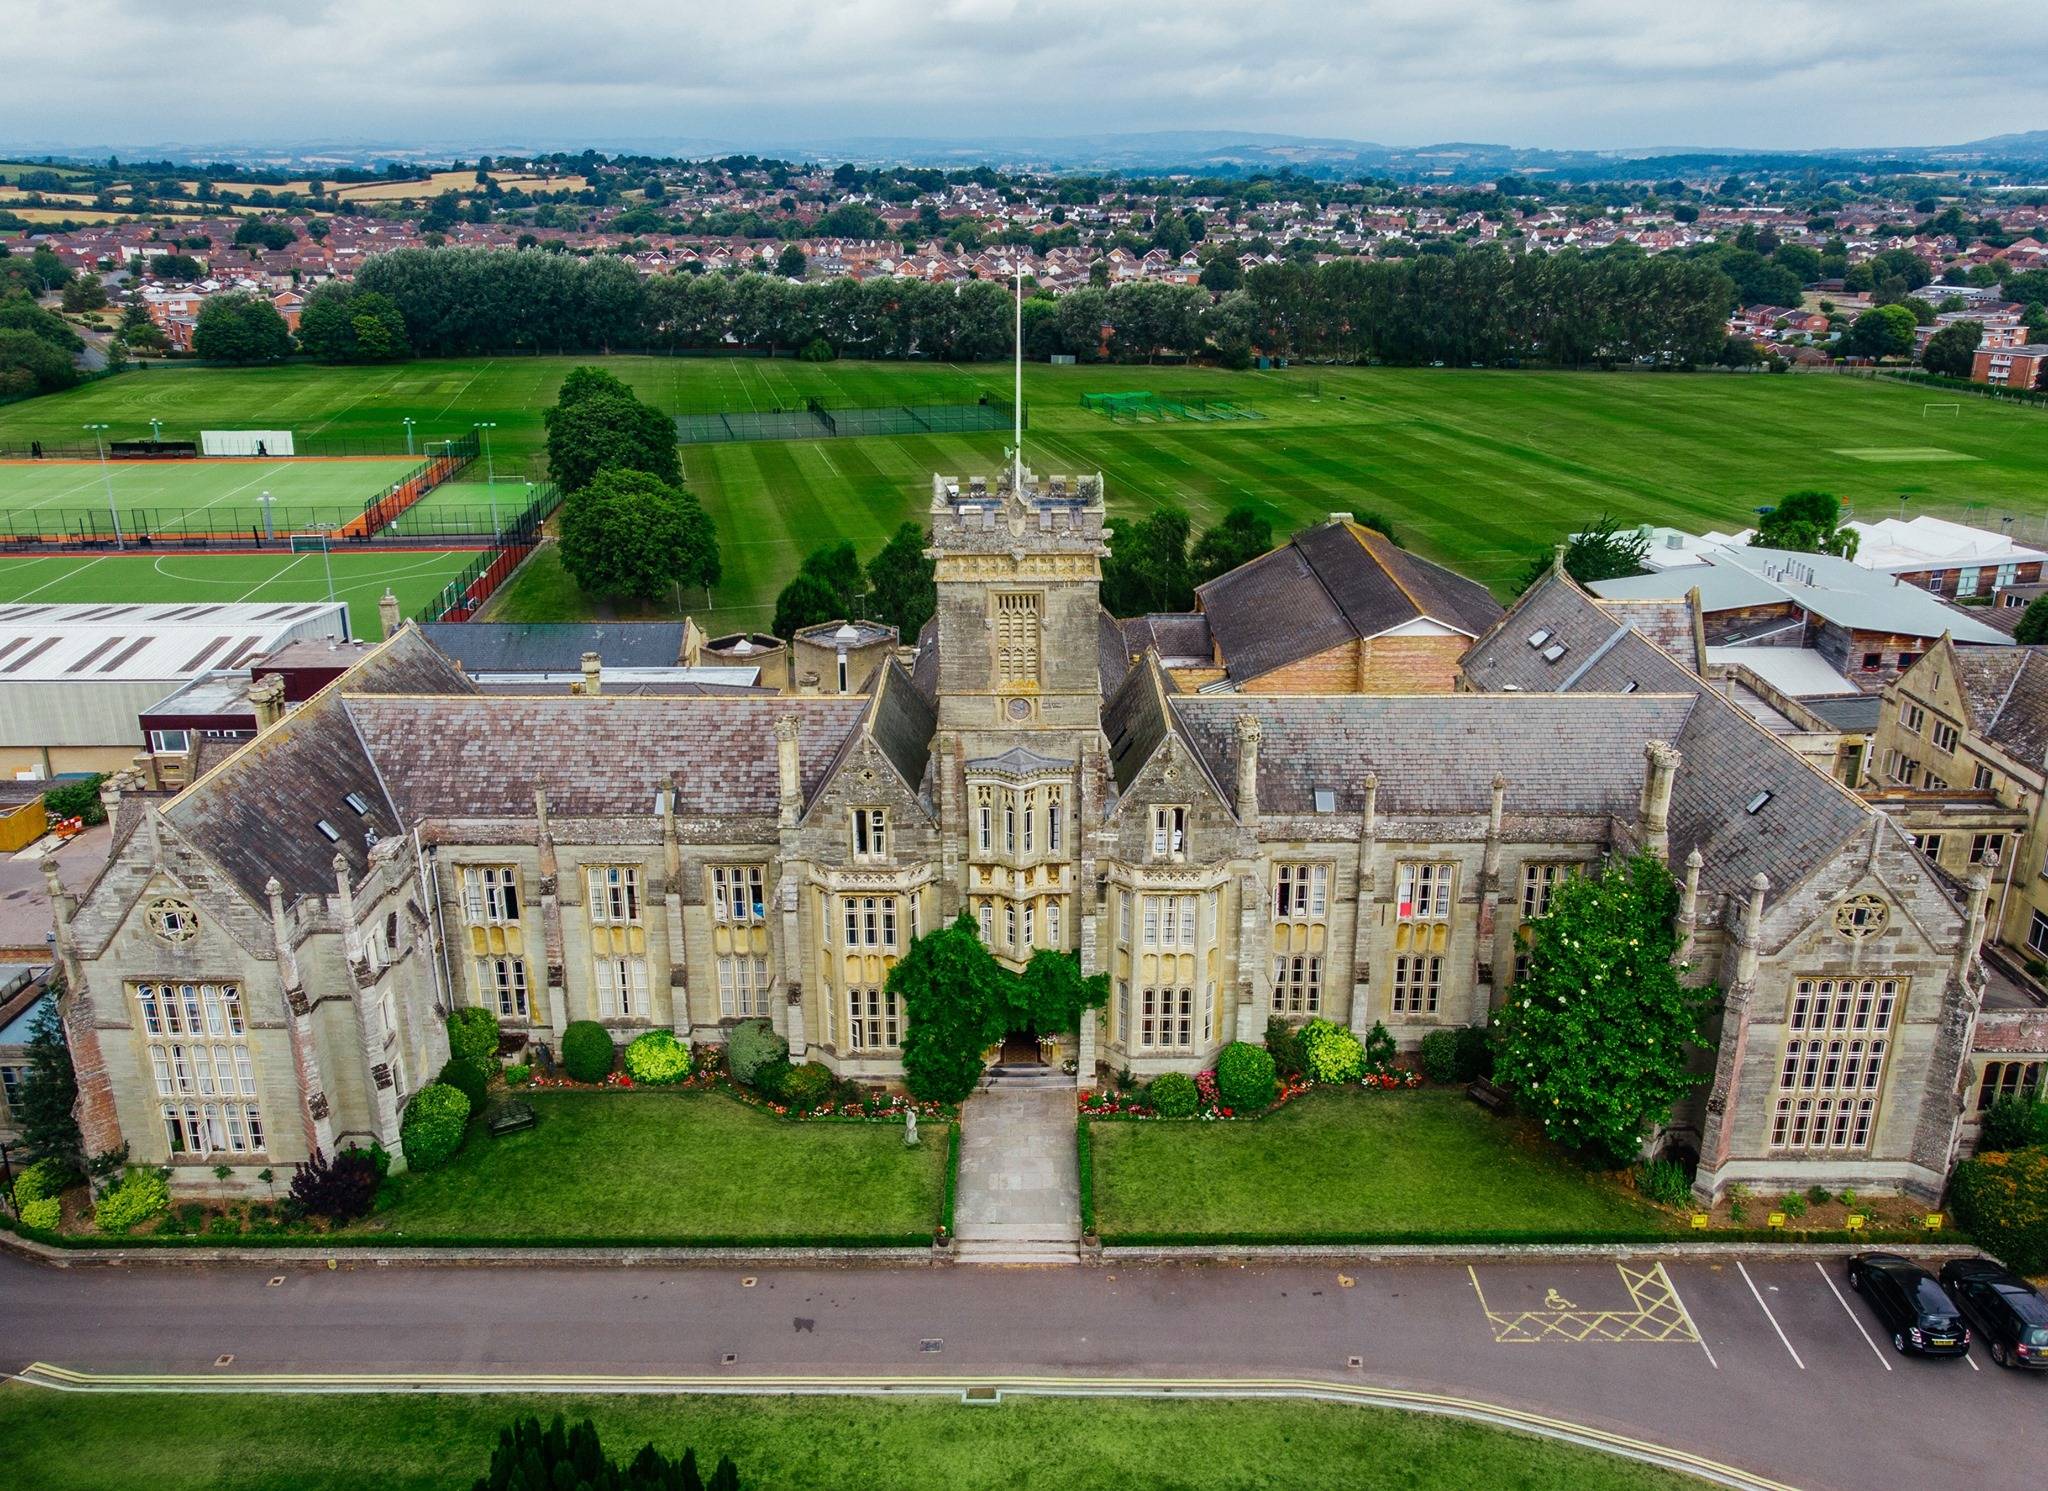 Queen’s College, Taunton